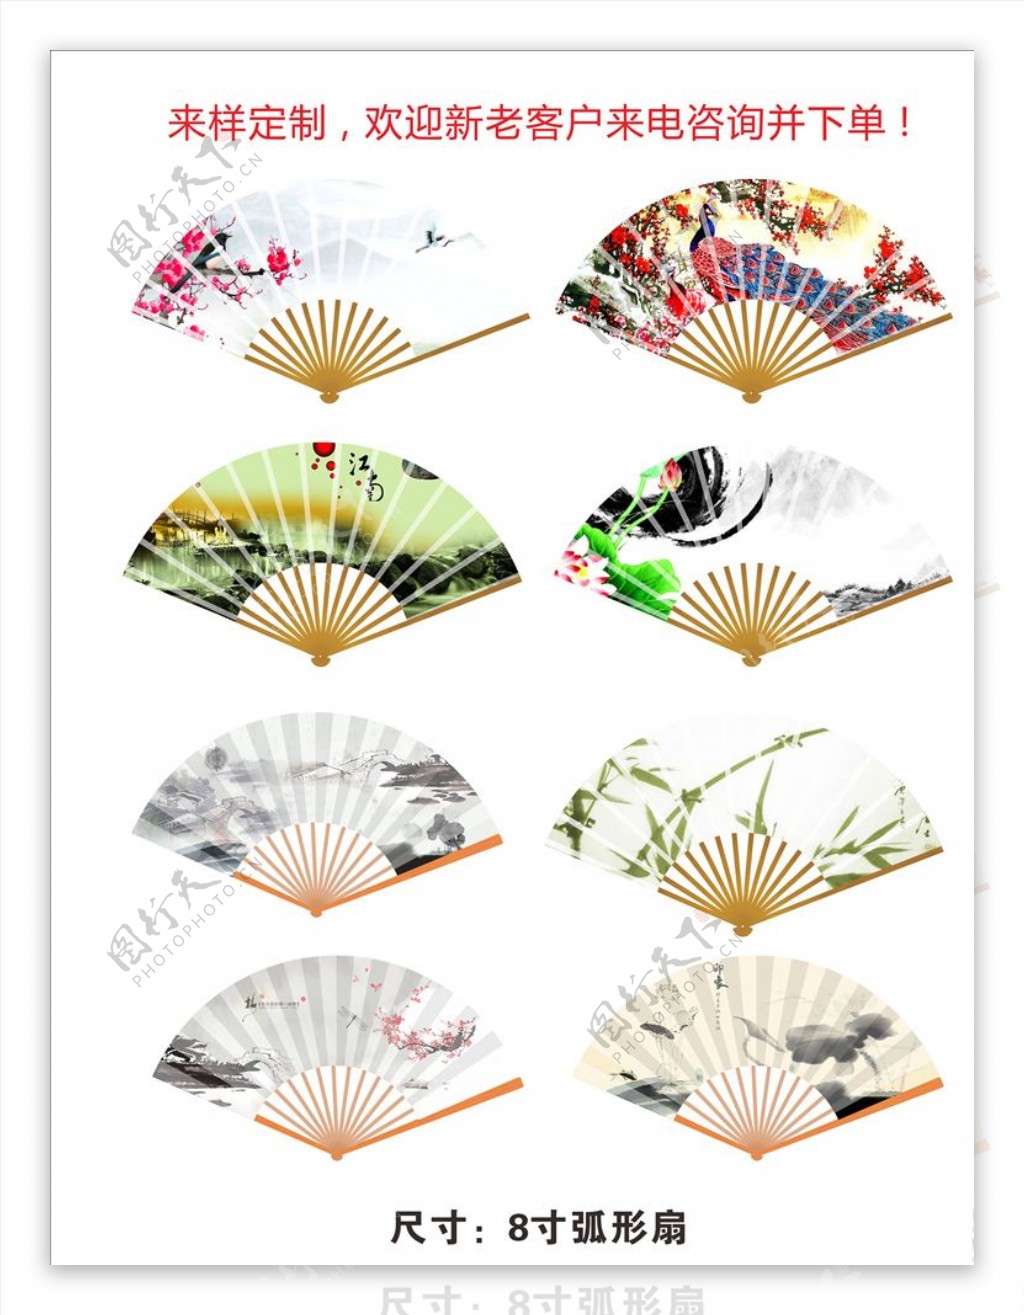 梅兰竹菊工艺绢布折扇